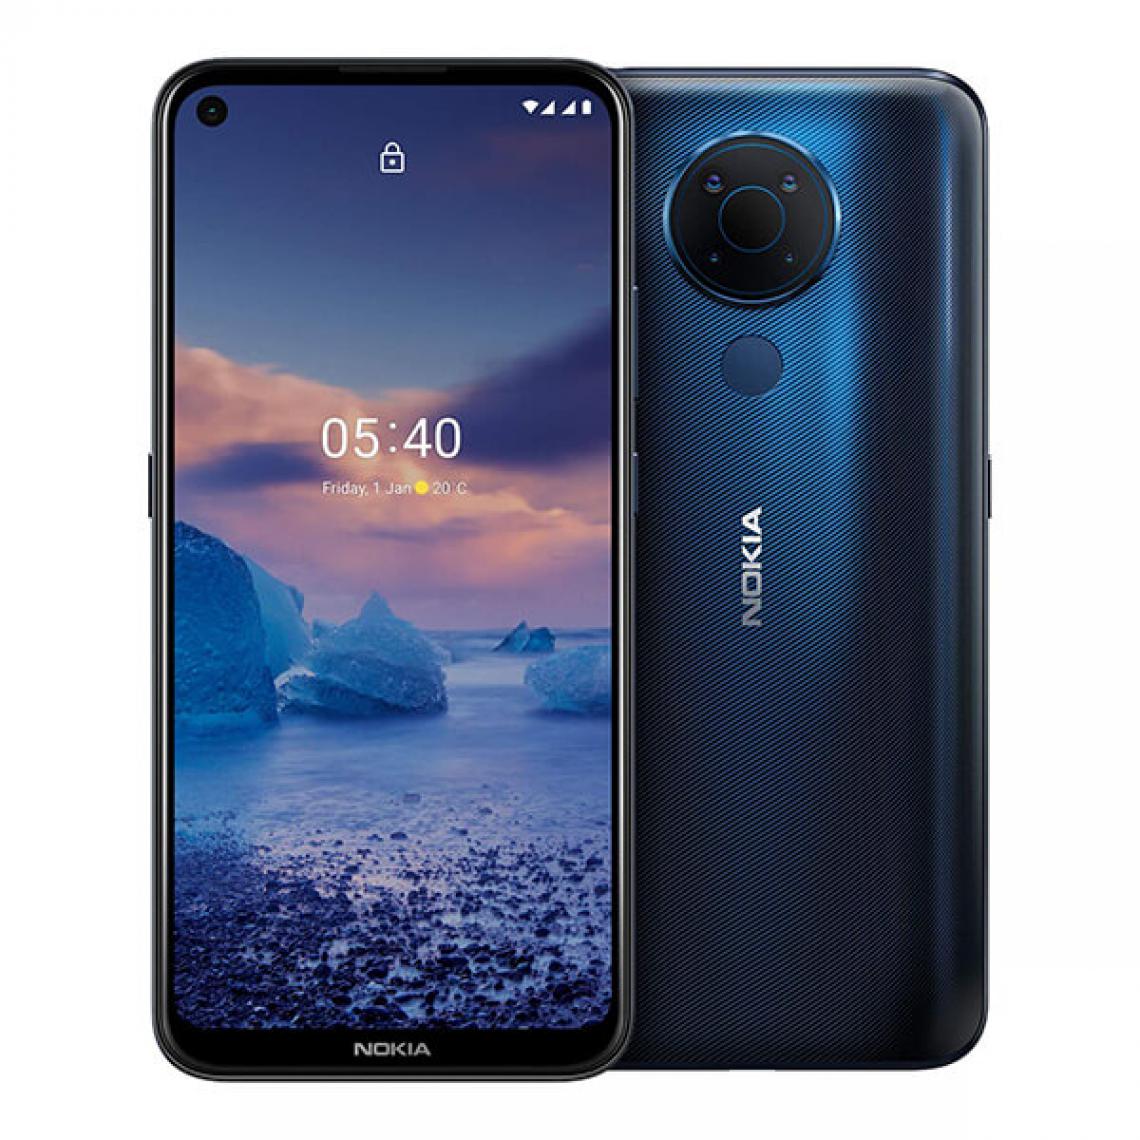 Nokia - Nokia 5.4 4Go/128Go Bleu (Polar Night Blue) Dual SIM - Smartphone Android